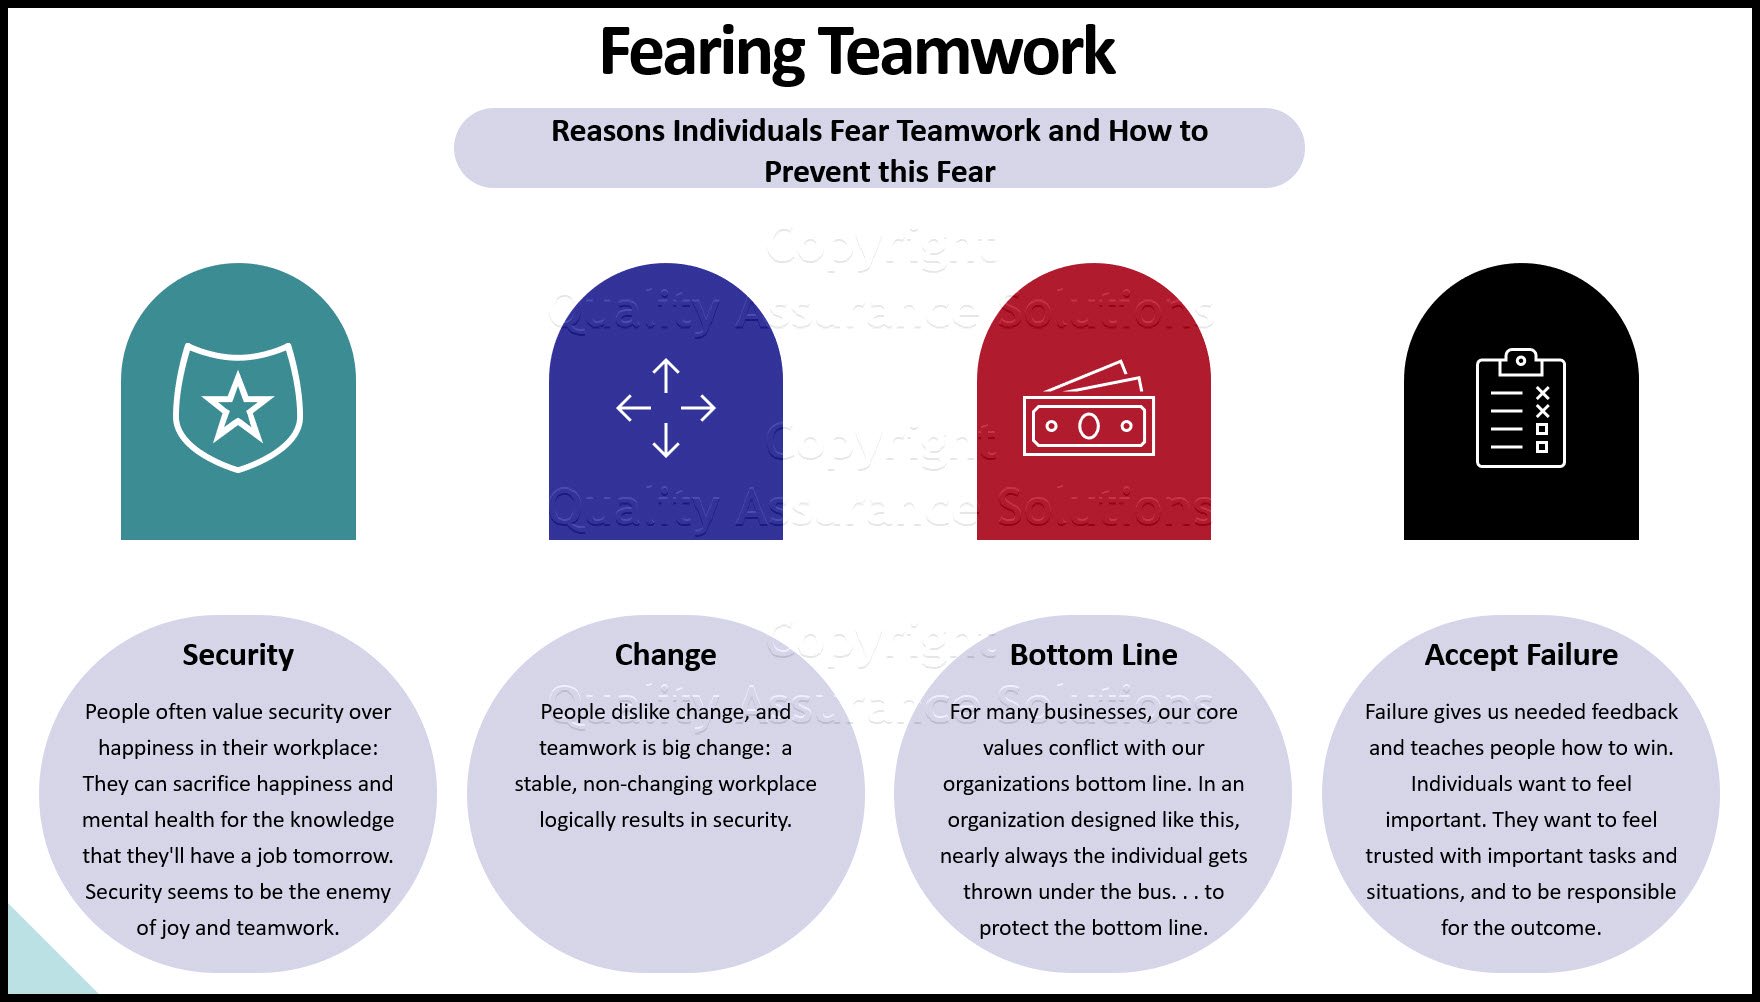 کار تیمی را در محل کار ایجاد کنید، چگونه تیم خود را در اعتماد ریشه کنید، از استعدادها استفاده کنید و محیط کاری ایجاد کنید که تحت فشار عمل کند و سرگرم کننده باشد.